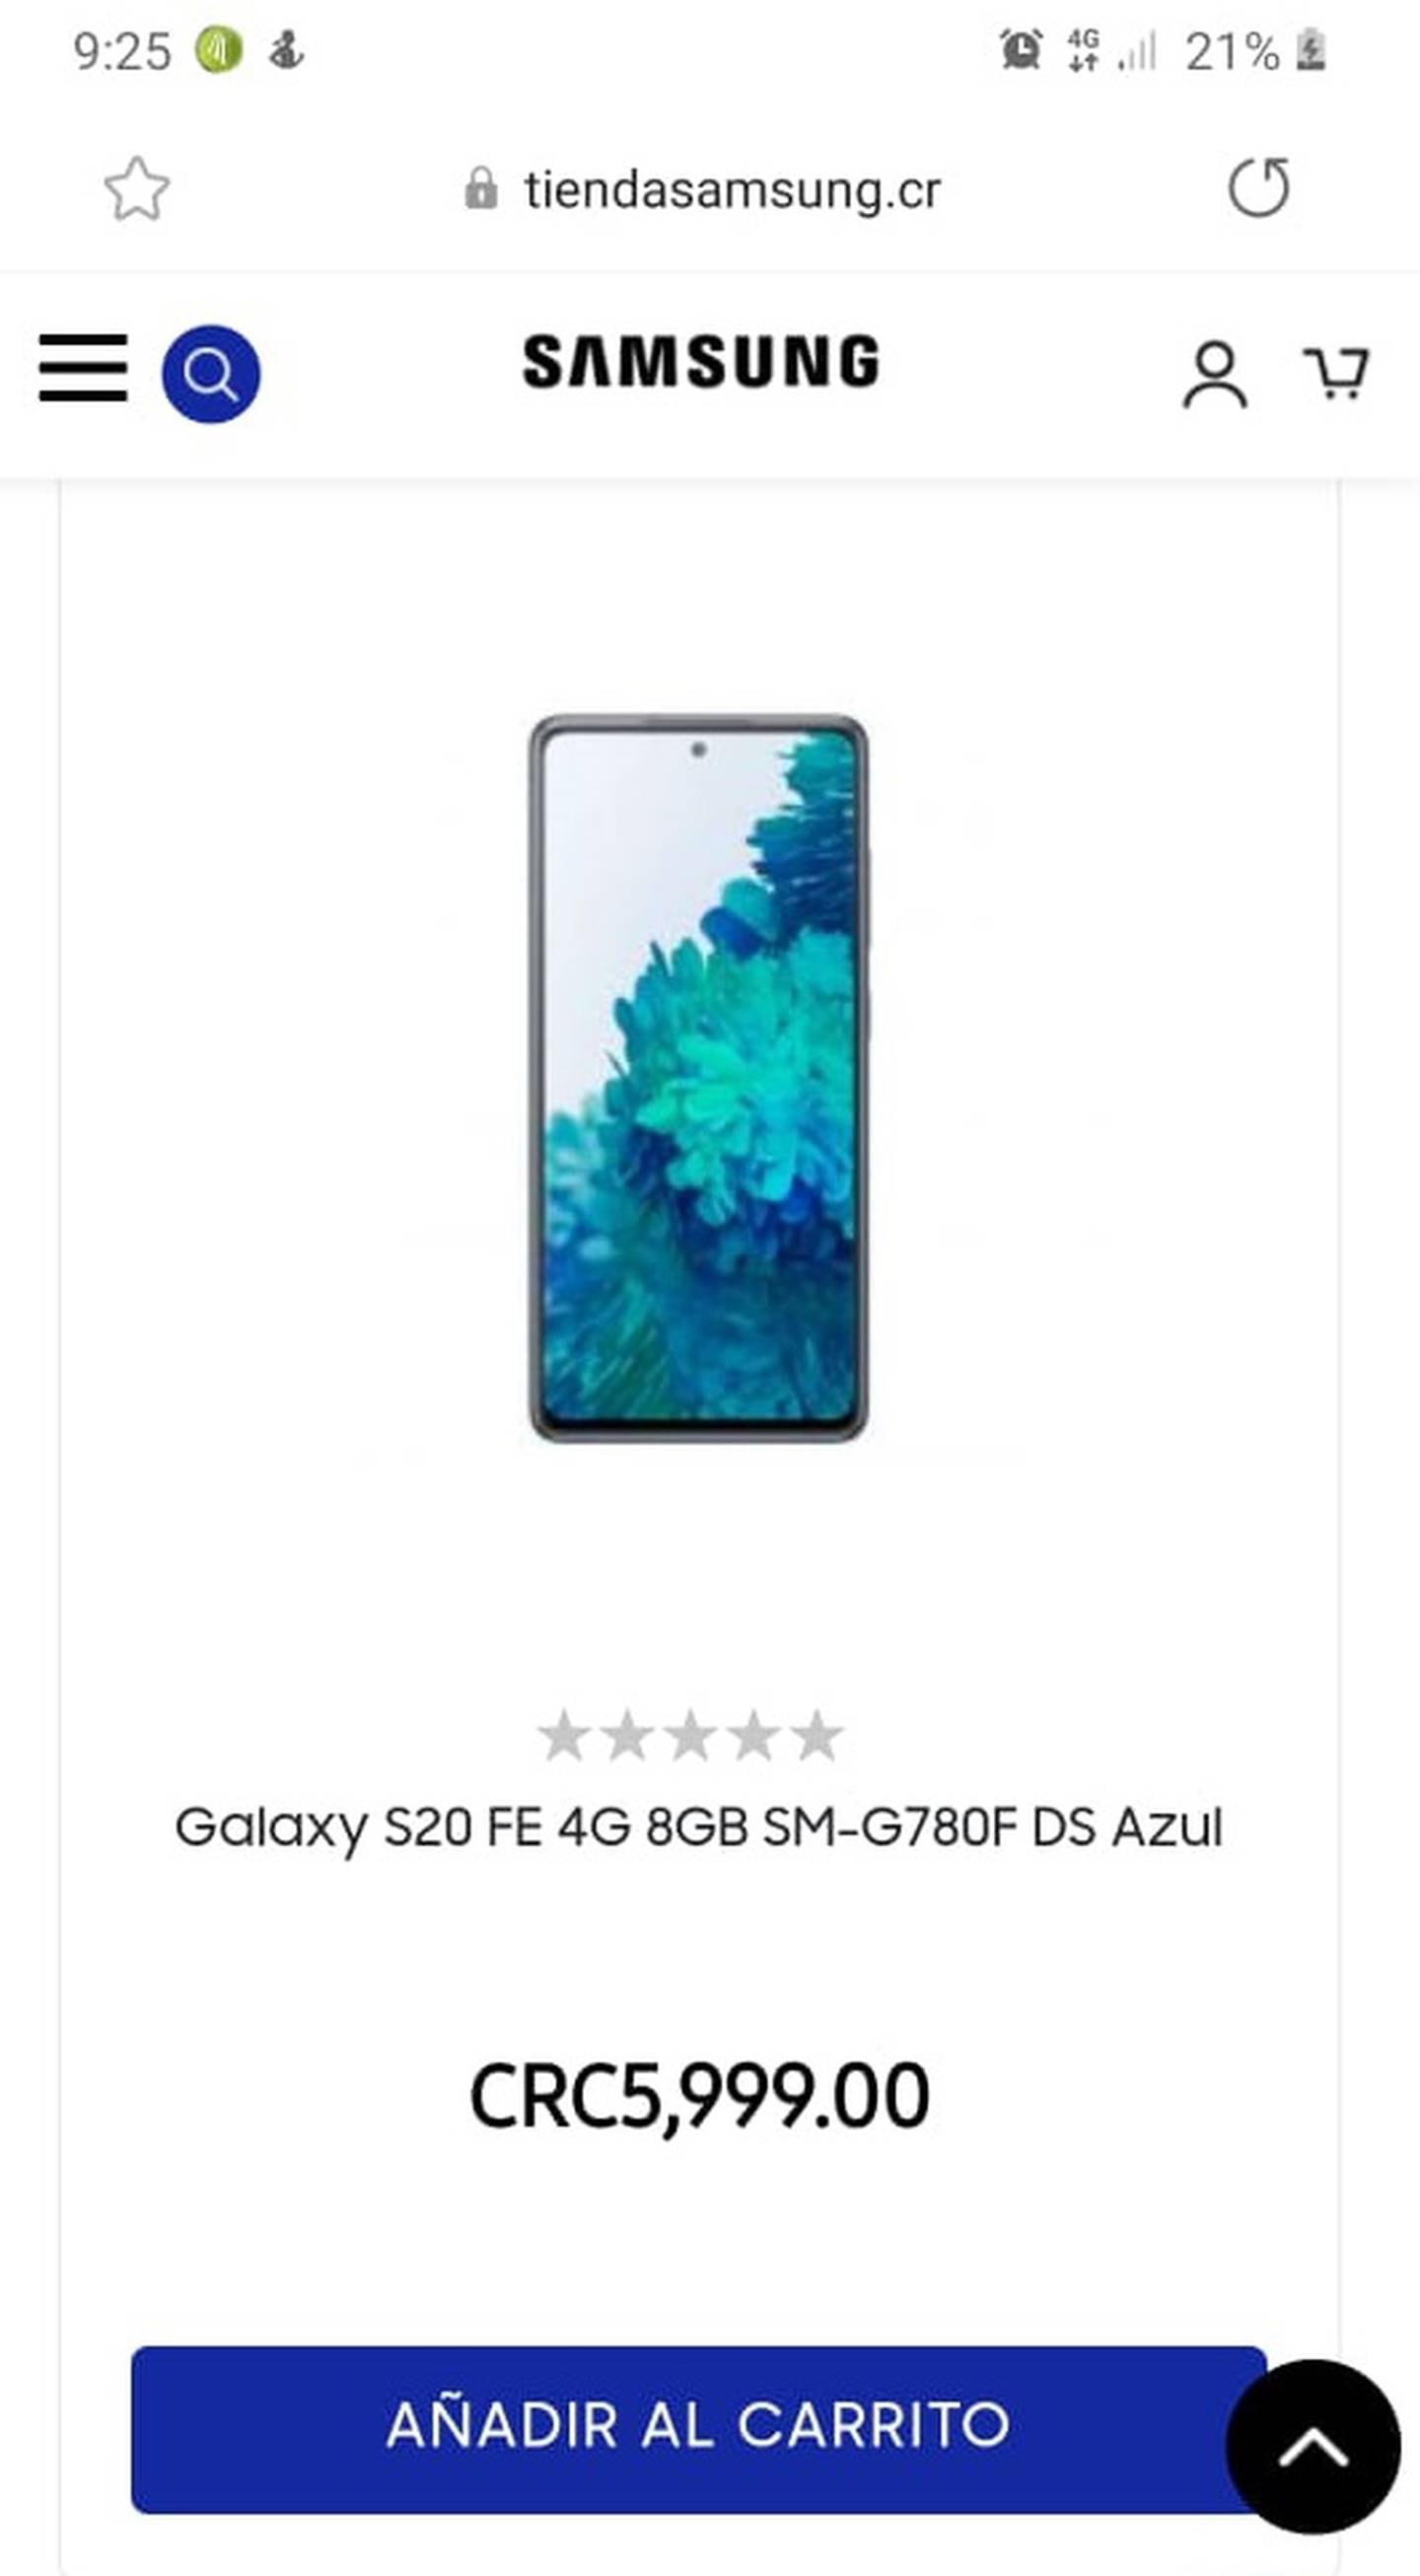 La página oficial en Internet para Costa Rica de la empresa Samsung, la cual es https://tiendasamsung.cr, agarró de majes a más de 50 ticos que el pasado viernes 18 de diciembre, creyeron comprar con todas las de la ley un modelo de teléfono celular.